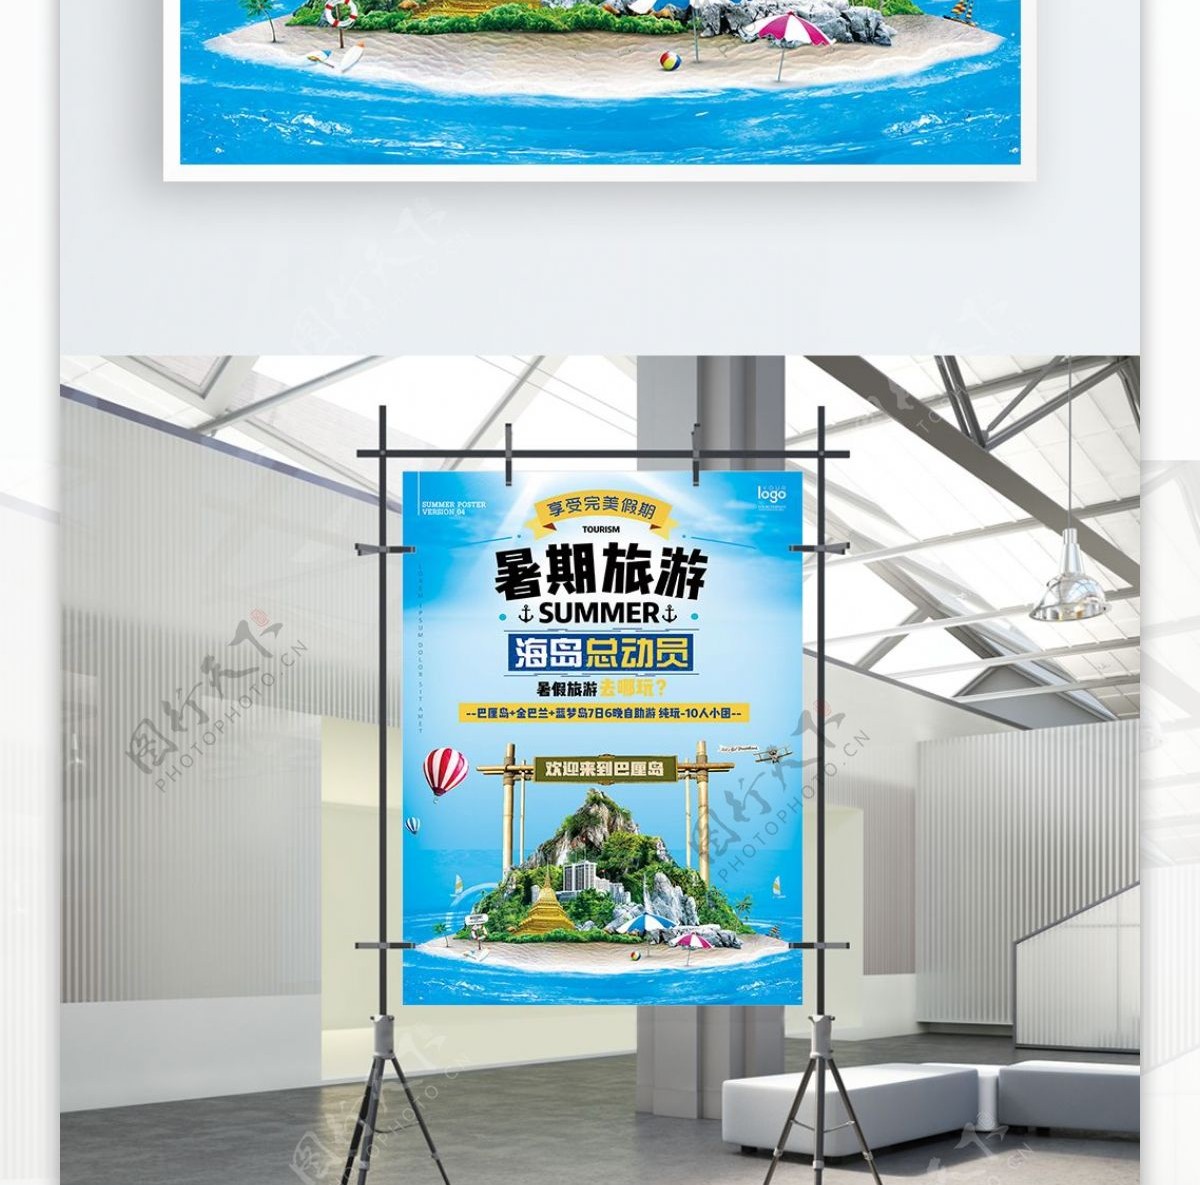 蓝色清新海洋天空暑期海岛旅游宣传海报设计